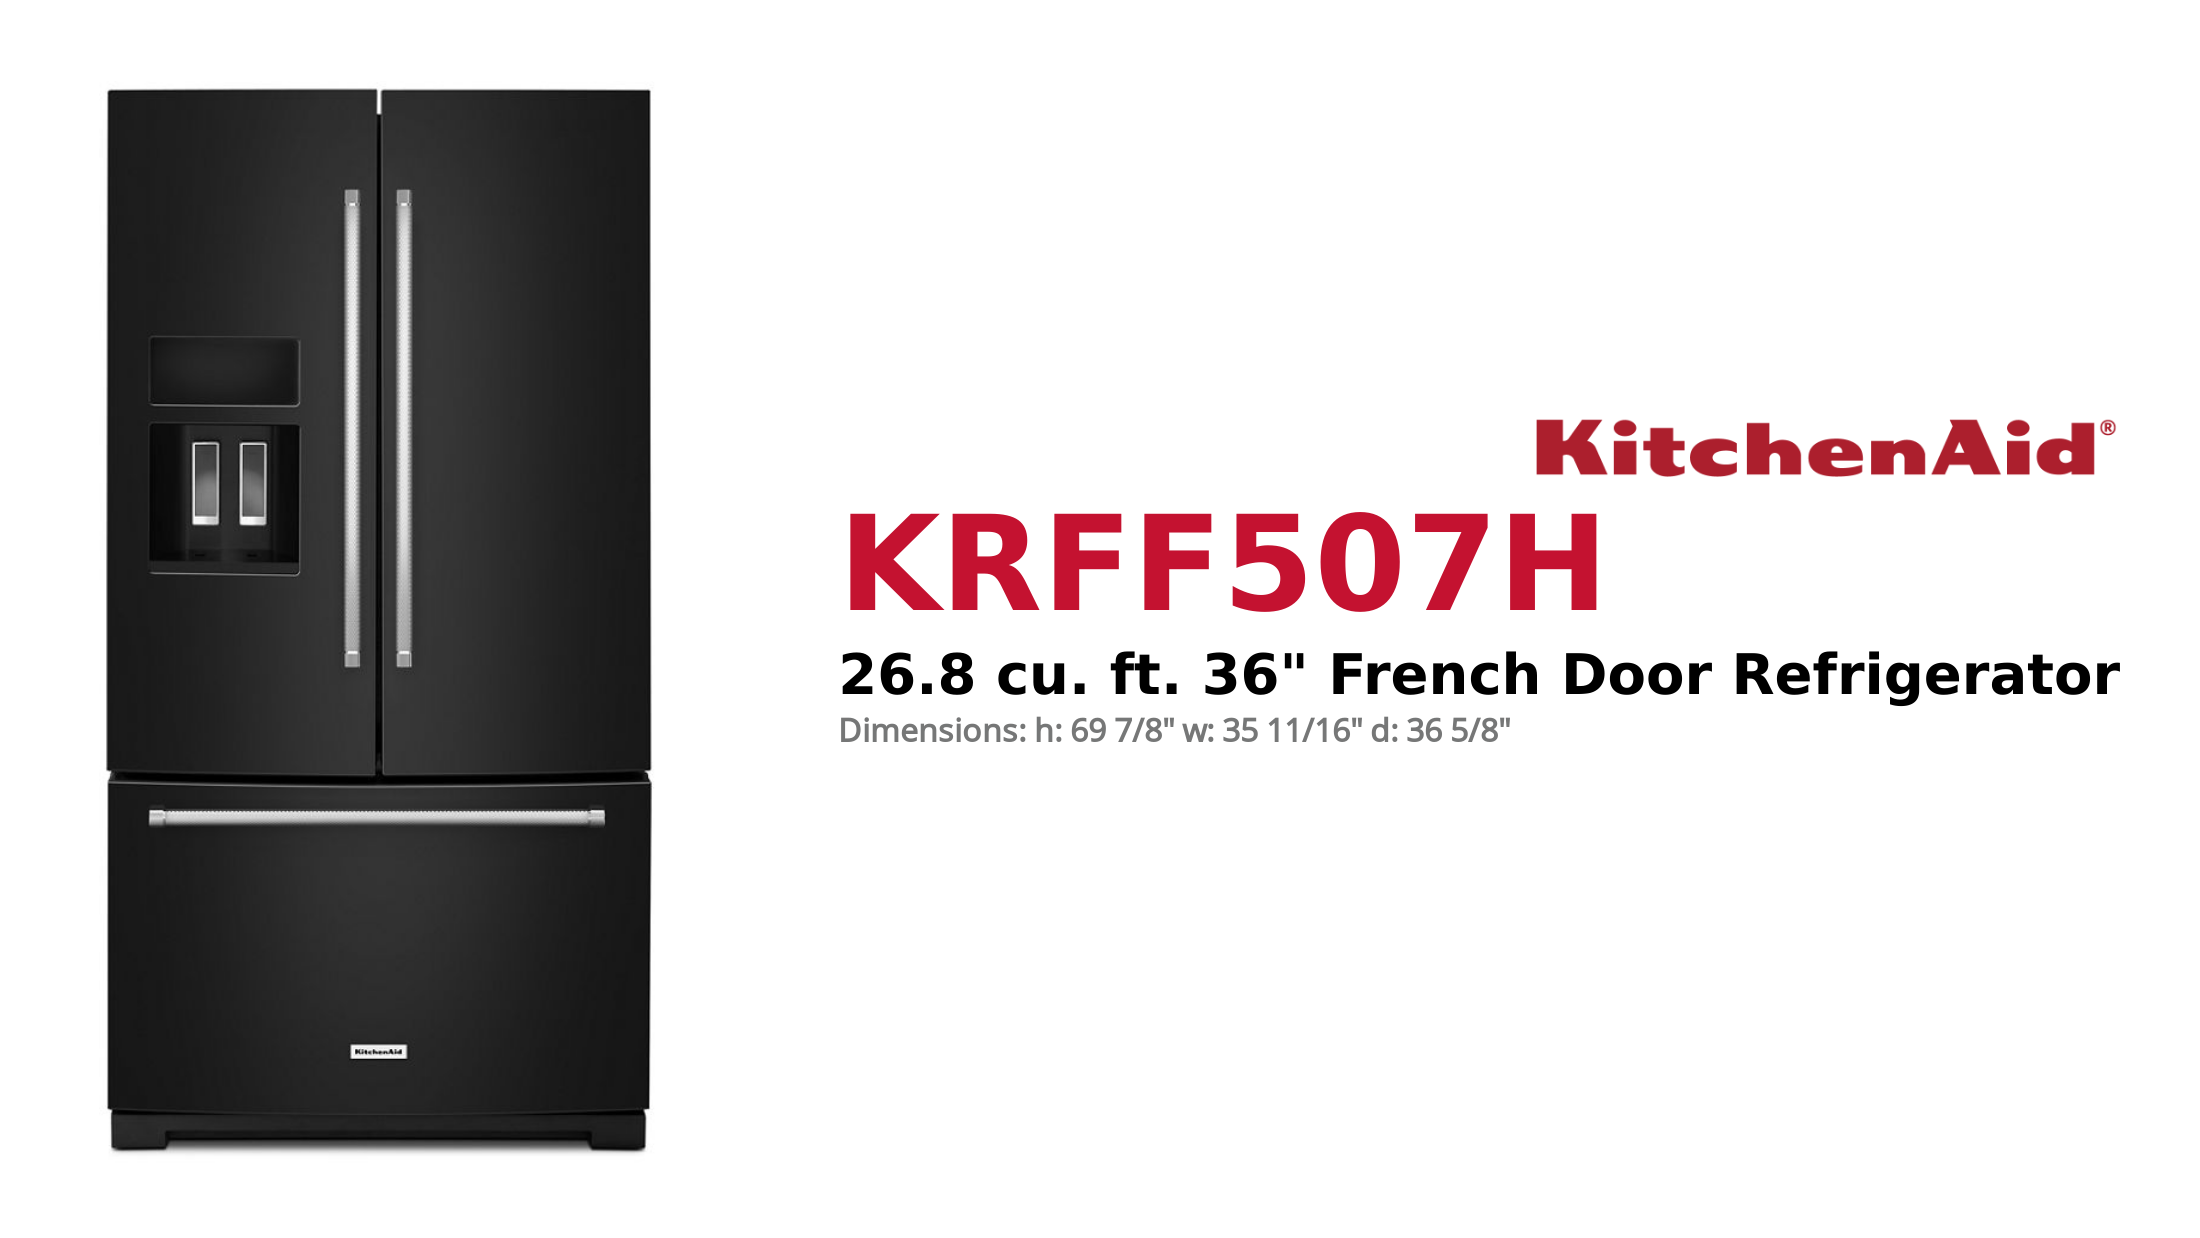 KitchenAid French Door Refrigerator KRFF507H Product Brief